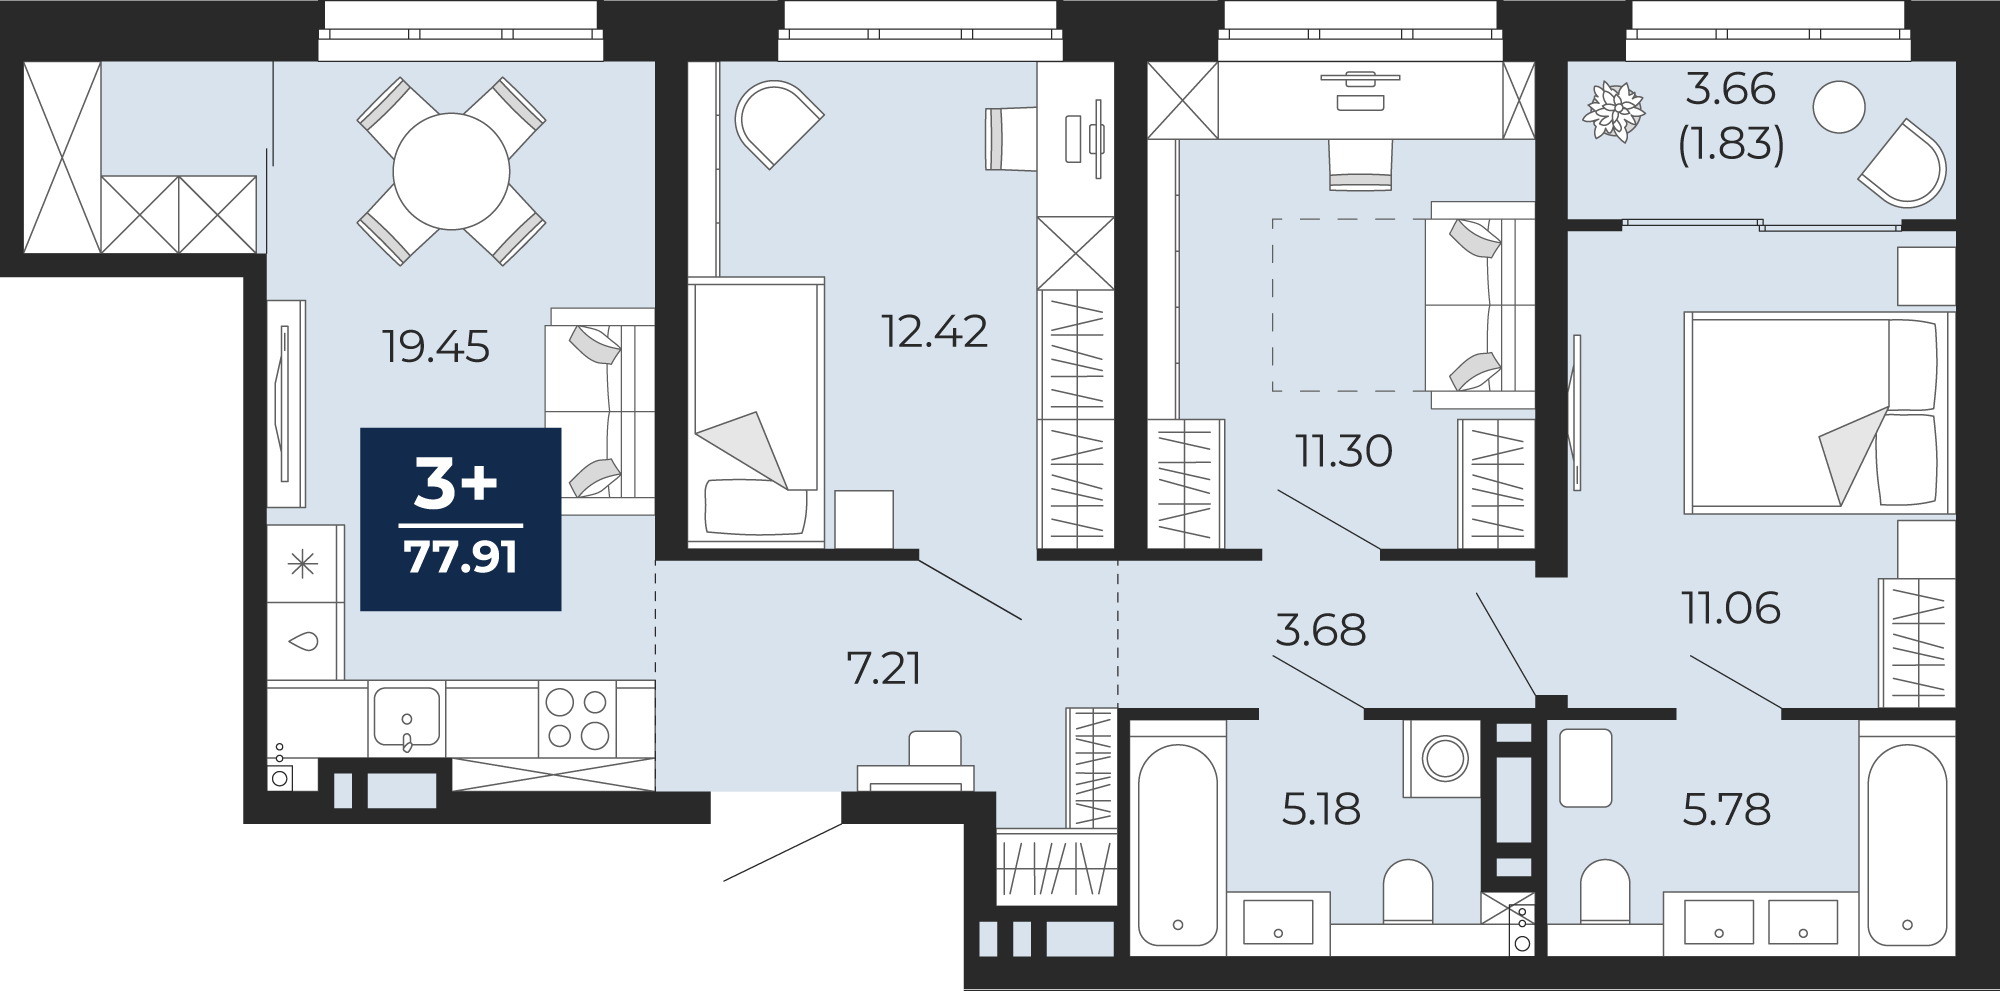 Квартира № 193, 3-комнатная, 77.91 кв. м, 8 этаж